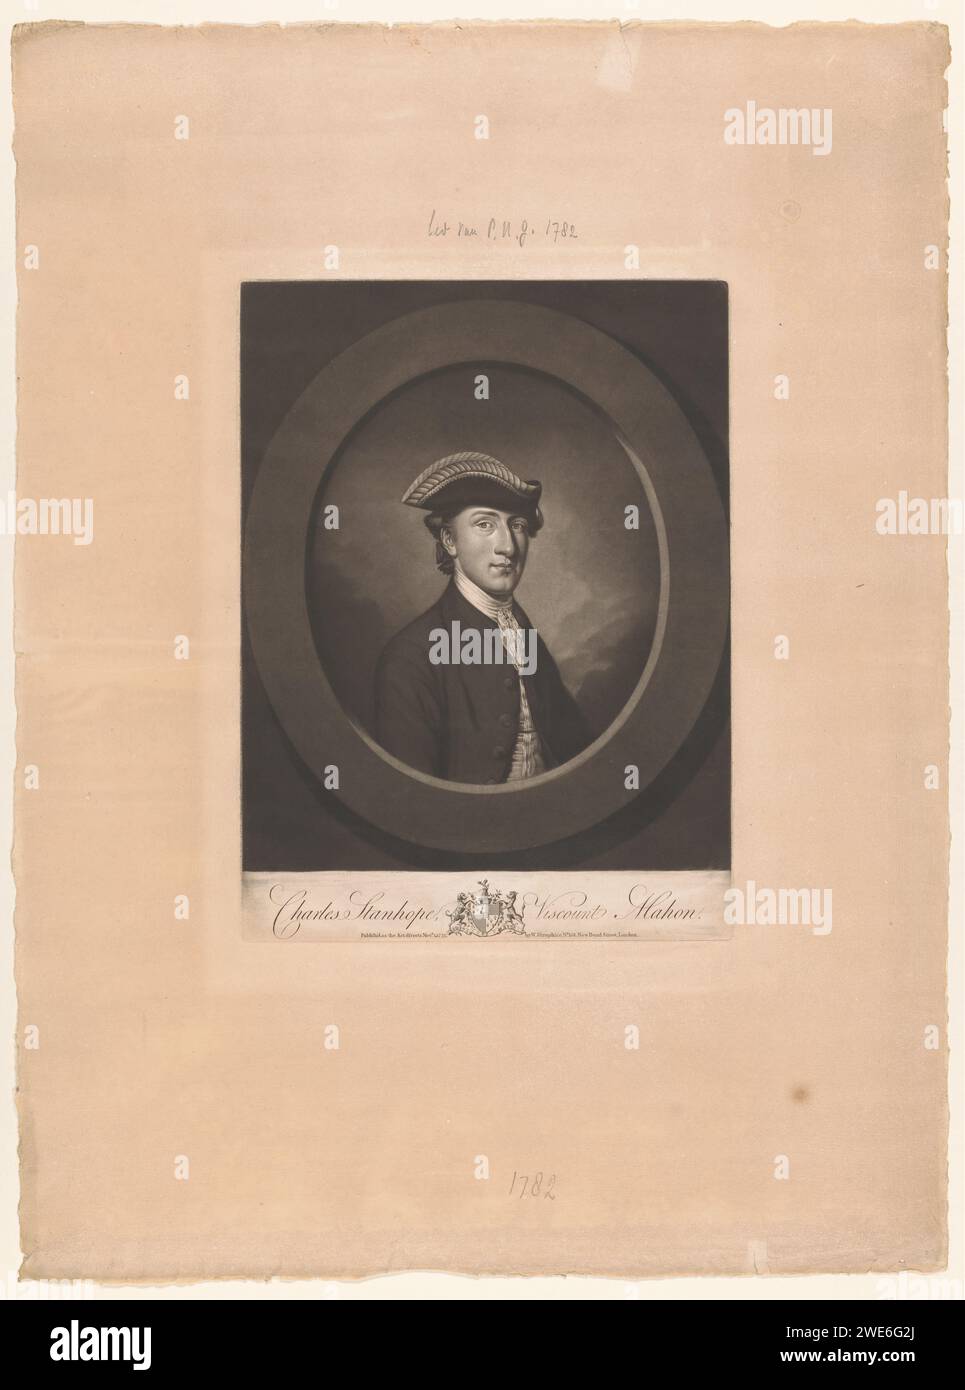 Portret van Charles Stanhope, Thomas Watson, nach Antoine Daniel Prudhomme, 1775 gedruckte Londoner Zeitung historische Personen Stockfoto